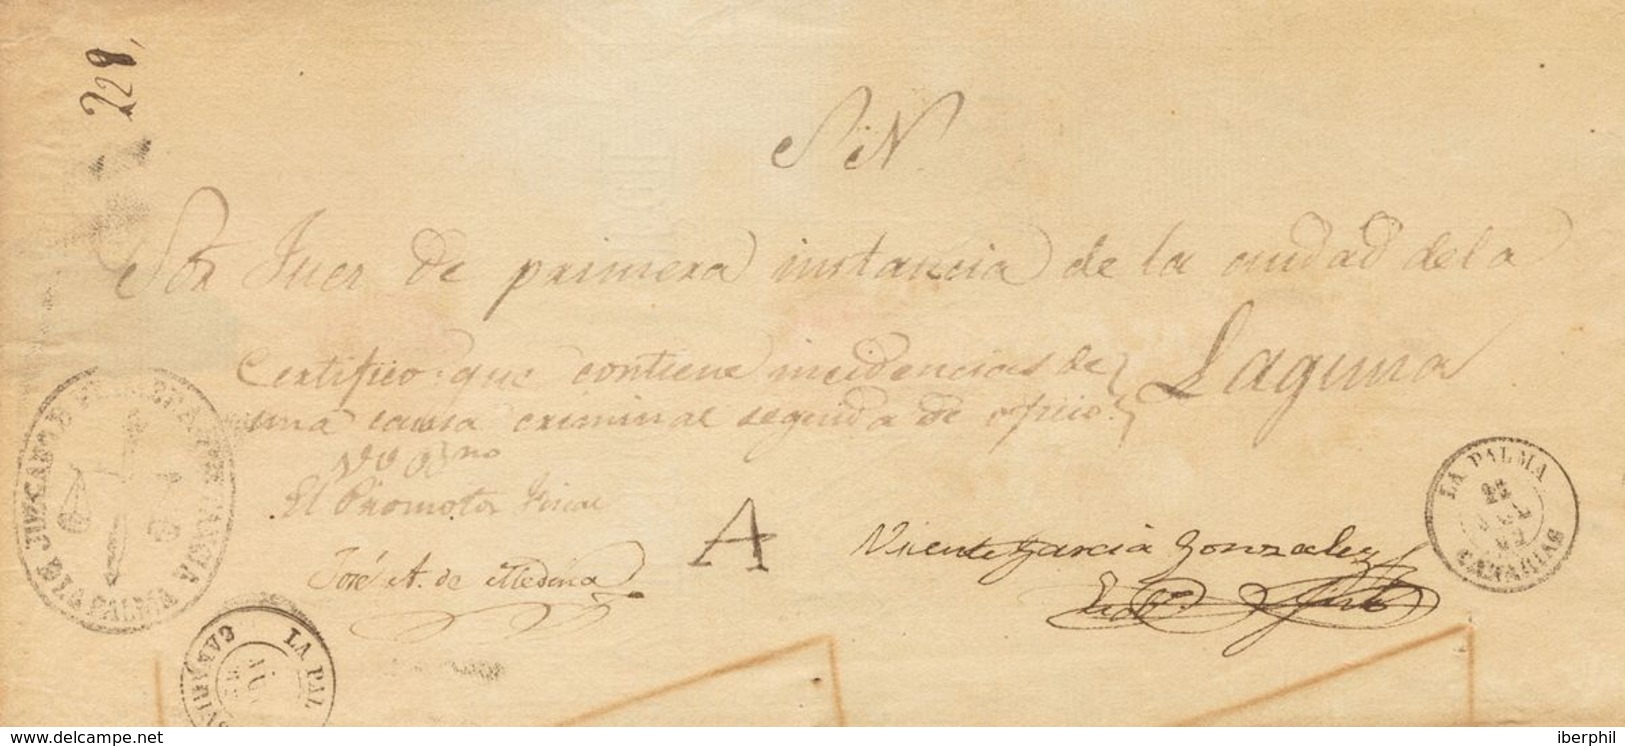 Prefilatelia, Canarias. Sobre. 1862. Frente De Plica Judicial De LA PALMA A LA LAGUNA. Marca "A", De Abono Manuscrita, S - ...-1850 Voorfilatelie